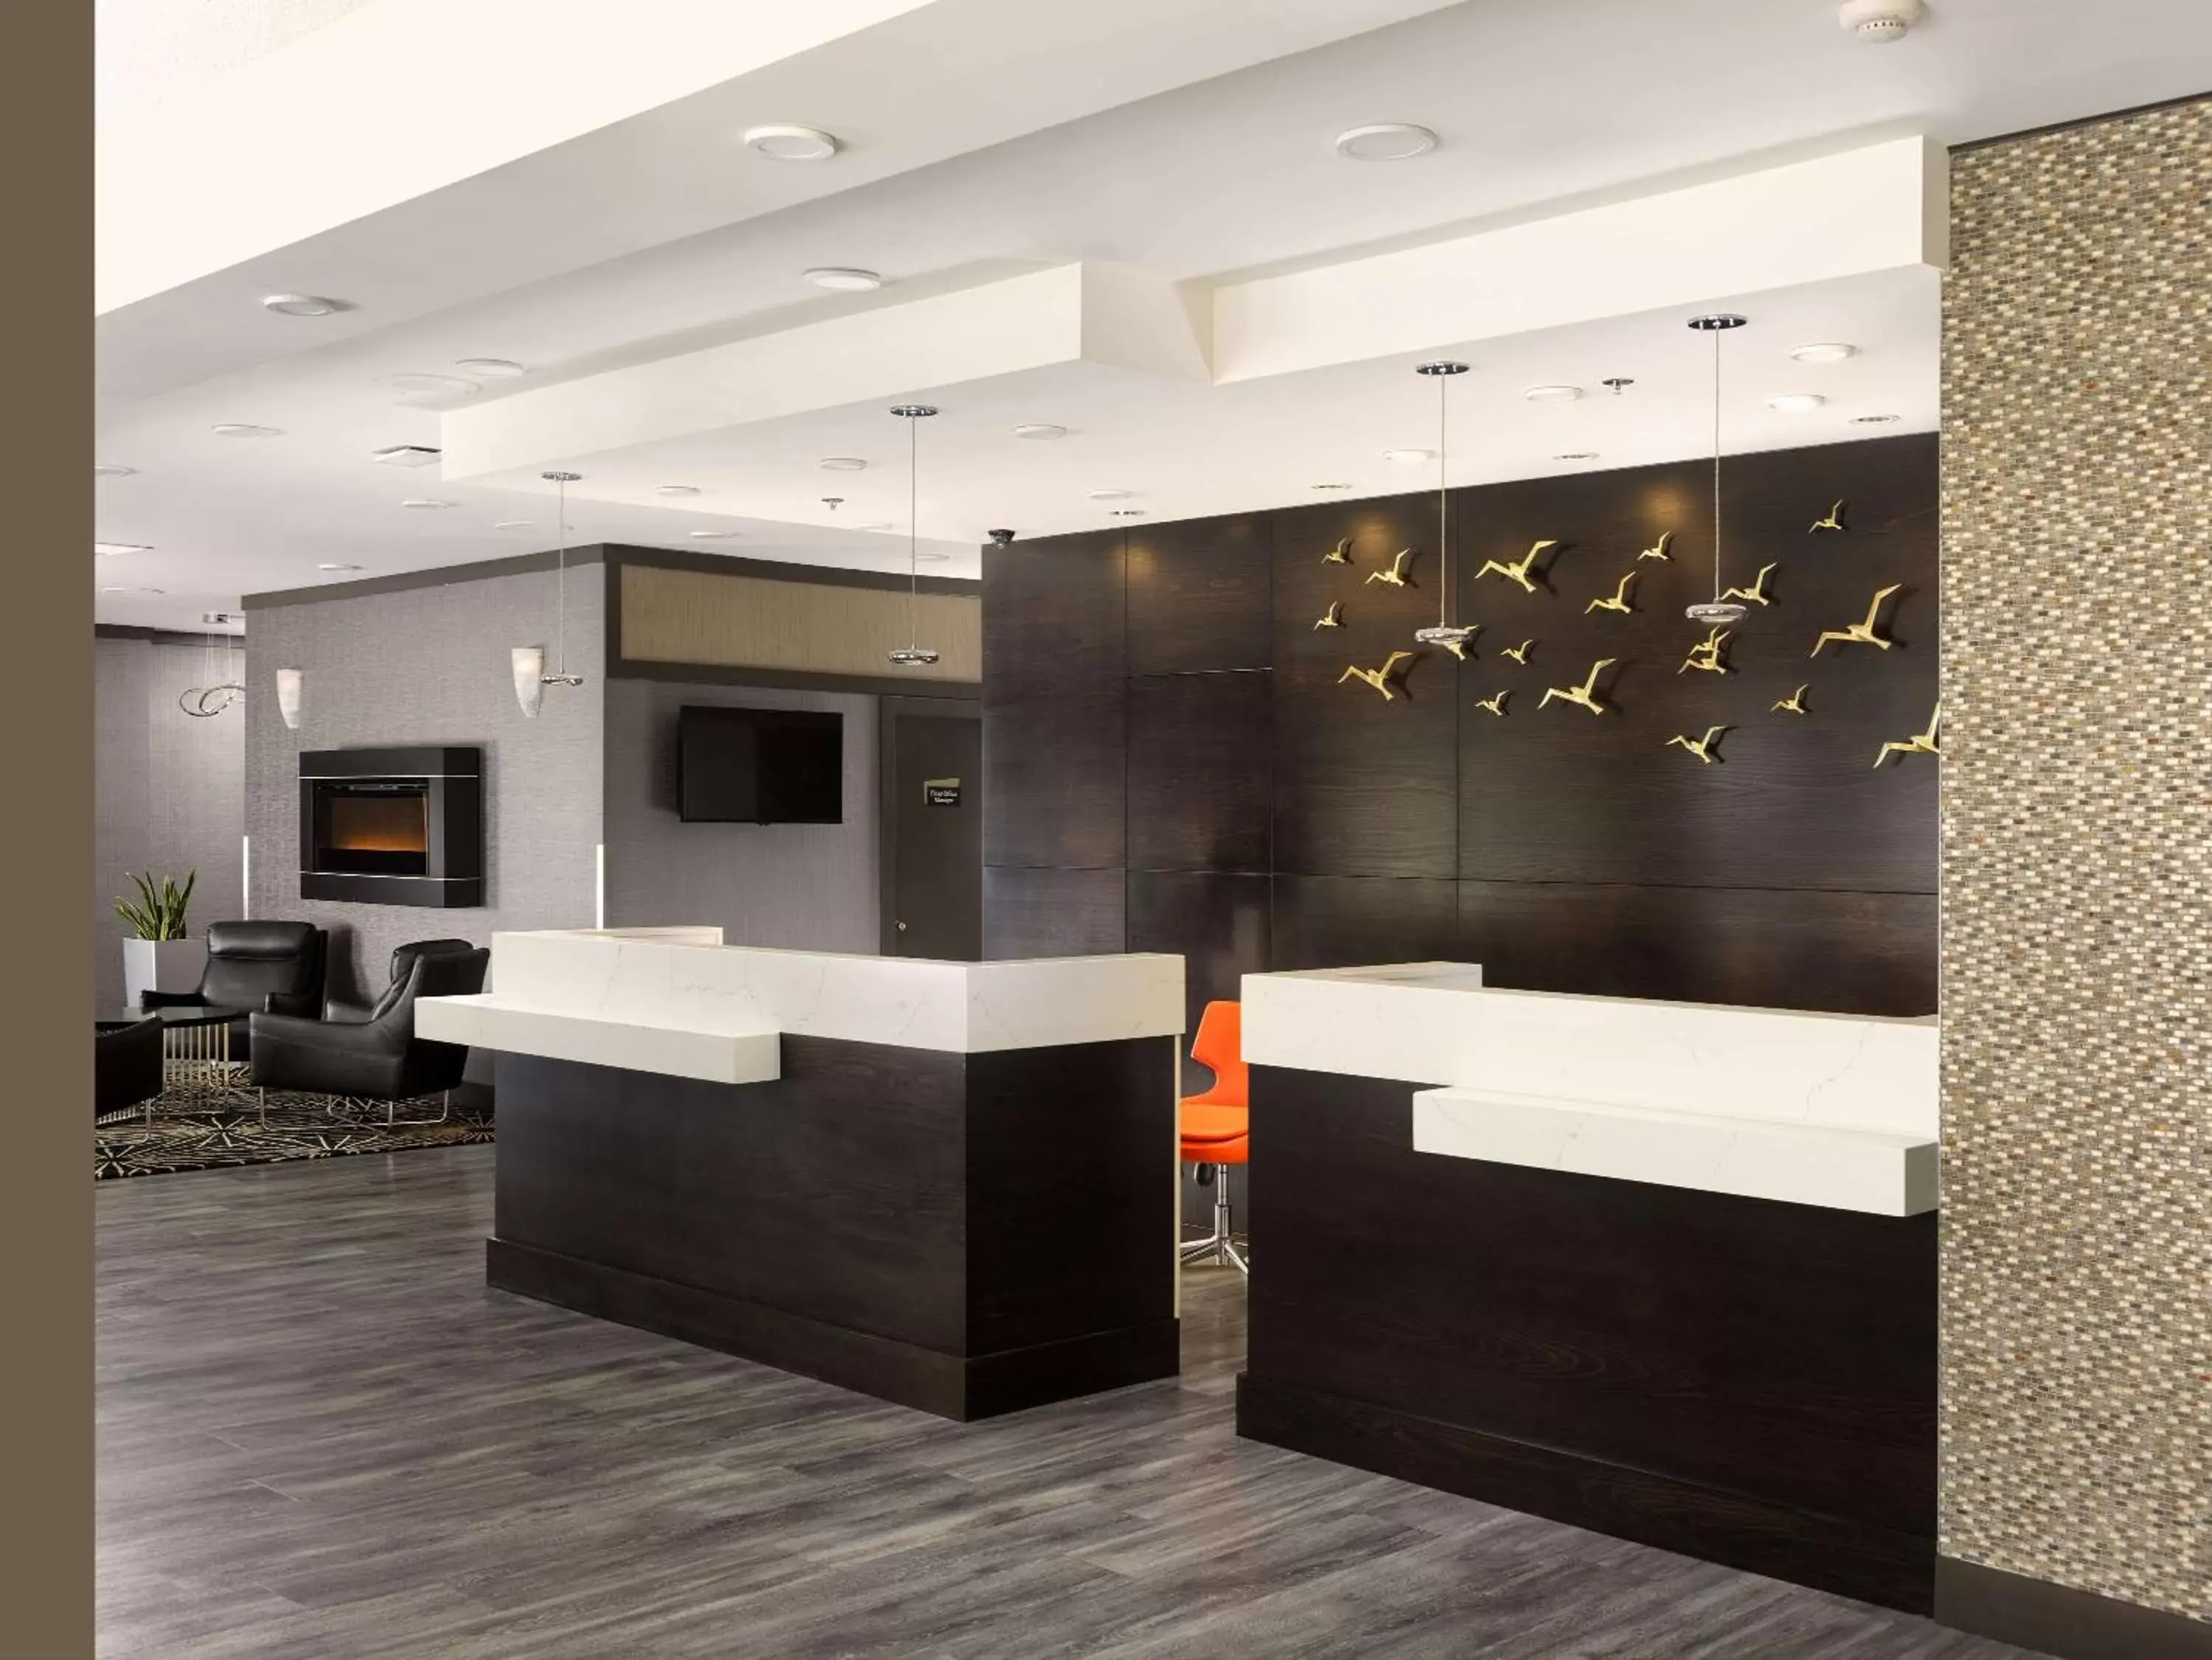 Lobby or reception, Lobby/Reception in BEST WESTERN PLUS Carlton Plaza Hotel